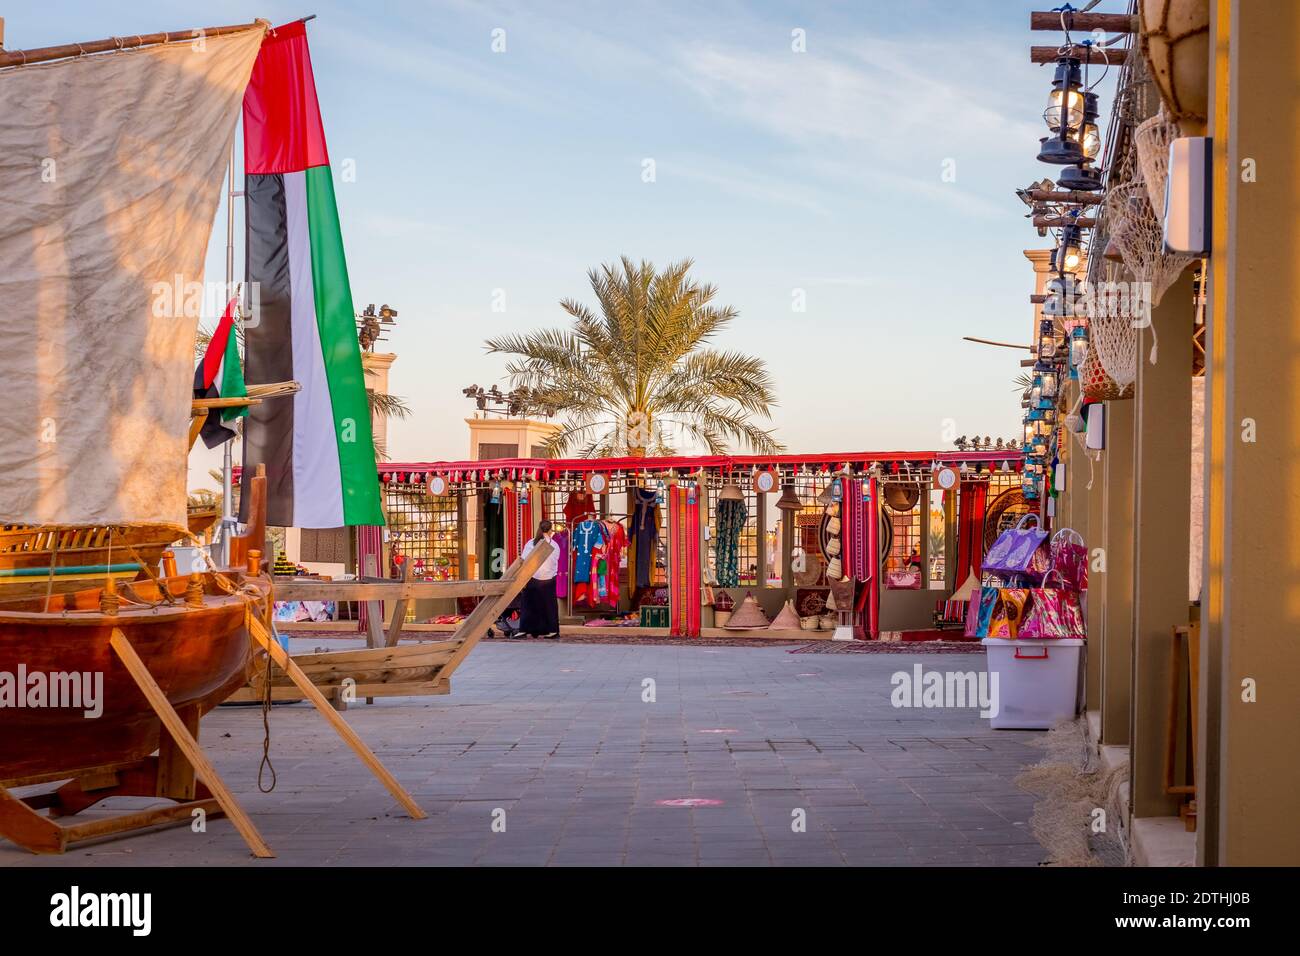 Arabische Laternen an Holzmasten, Blick auf Abu Dhabi, Vereinigte Arabische Emirate, die Hauptstadt der Vereinigten Arabischen Emirate. Stockfoto